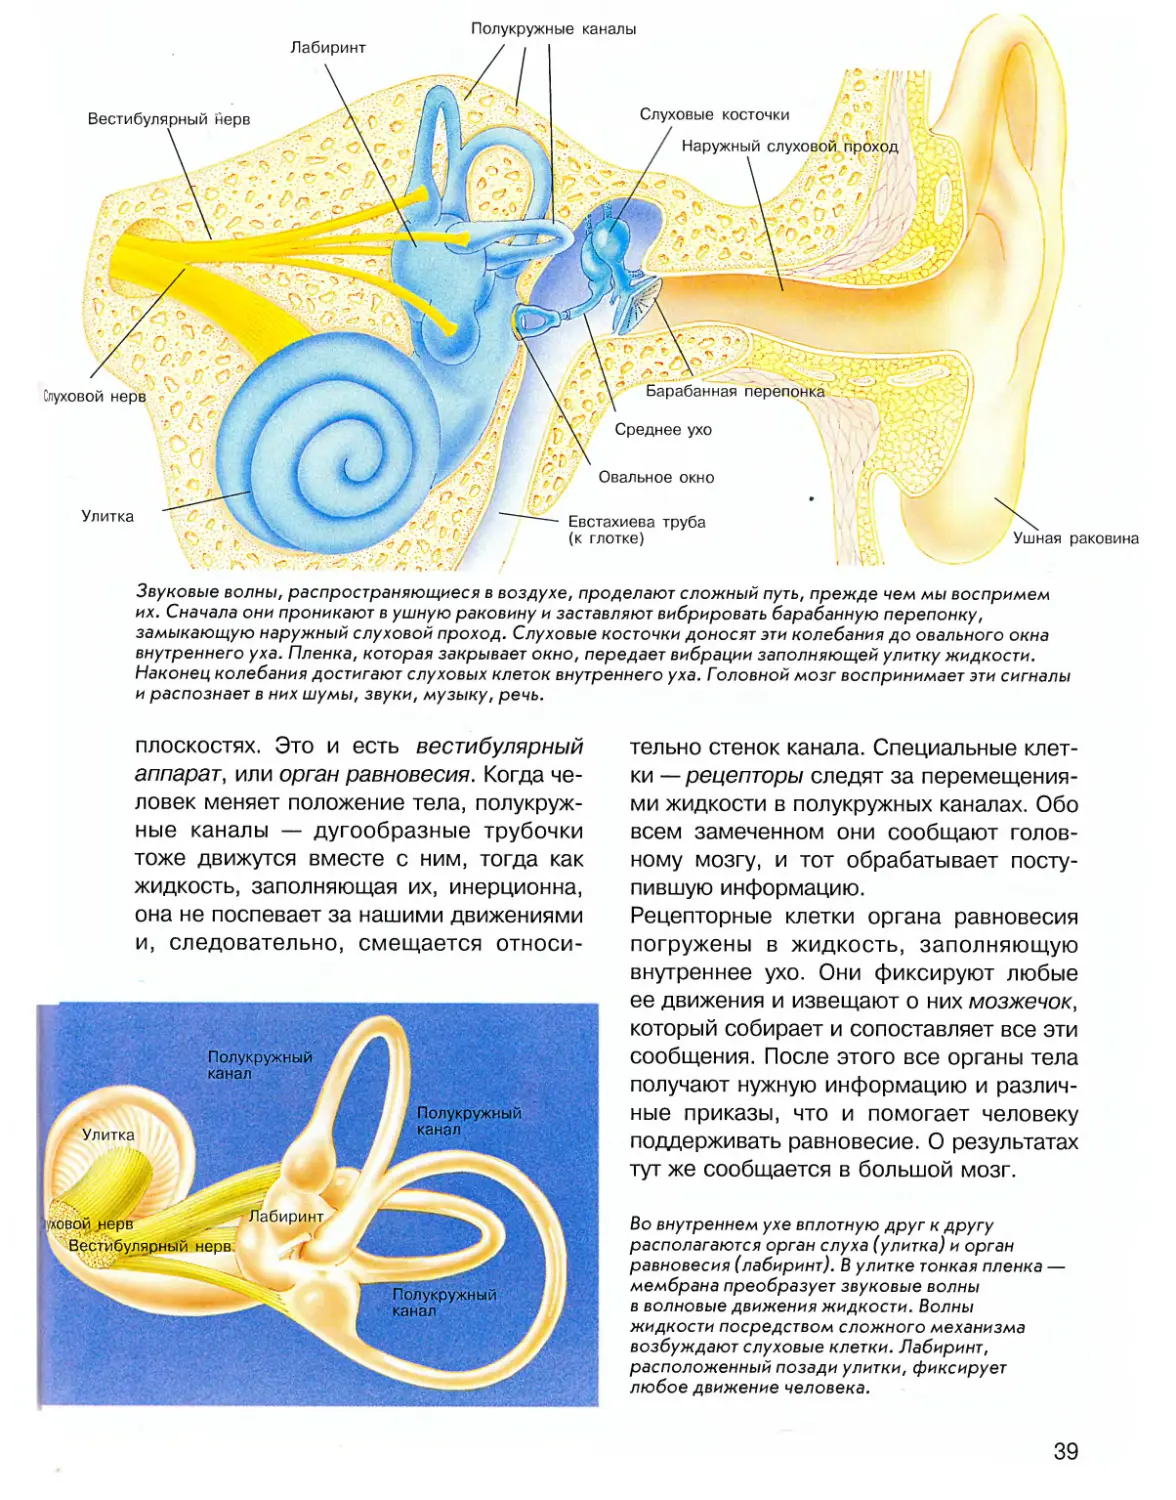 Передачи звуковой волны на слуховые рецепторы. Вестибулярный аппарат внутреннего уха. Полукружные каналы внутреннего уха. Внутреннее ухо вестибулярный аппарат. Строение полукружных каналов внутреннего уха.